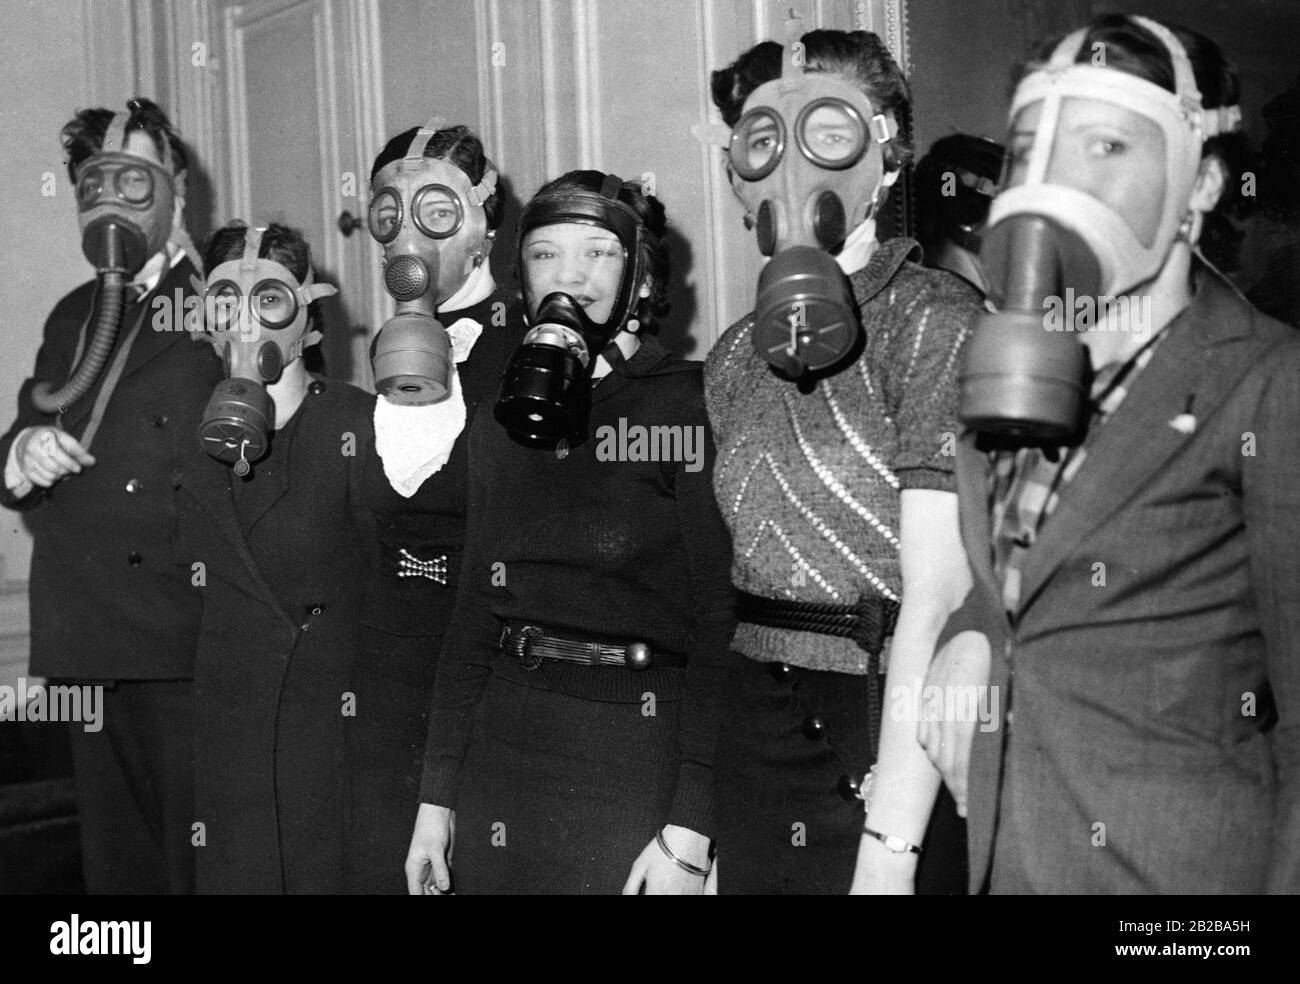 Nach der Mobilisierung in Frankreich in den letzten Friedenswochen hatte das Luftministerium beschlossen, Gasmasken zu verteilen, um das französische Volk vor der drohenden Luftangriffe zu schützen. Zahlreiche Franzosen melden sich freiwillig, um sich vor der drohenden Luftangriffe zu schützen. Die meisten Freiwilligen sind Frauen. Stockfoto